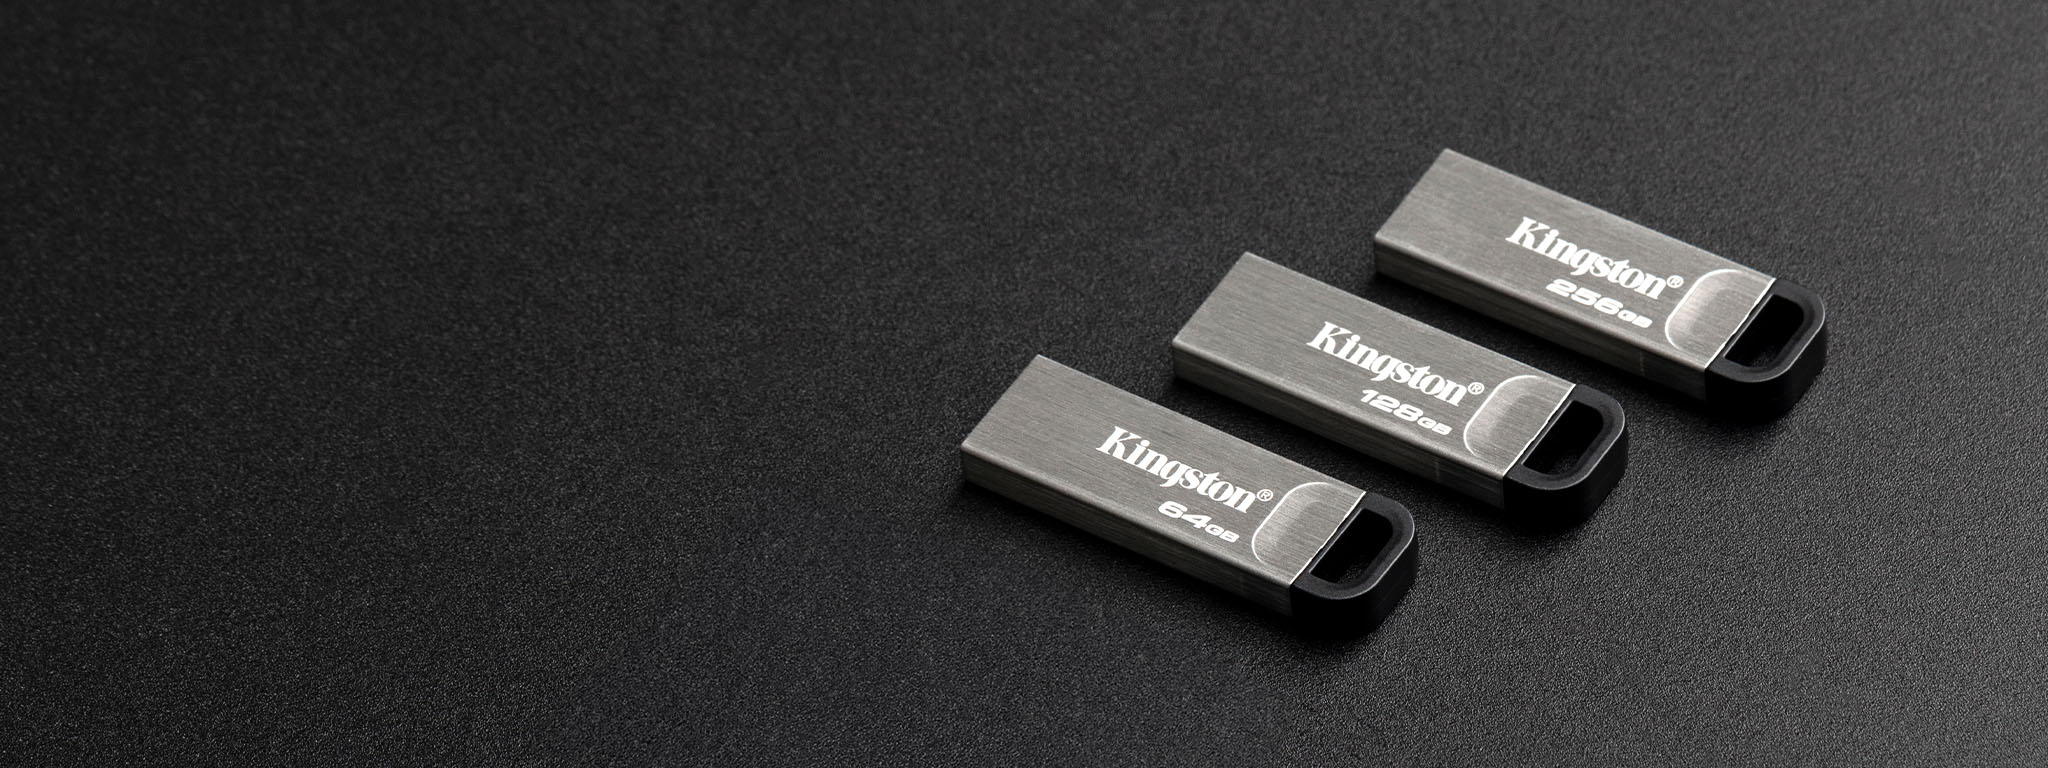 Ảnh nhìn từ trên cao về 4 chiếc USB Flash DT Kyson có 4 mức dung lượng khác nhau, đặt trên bề mặt màu đen